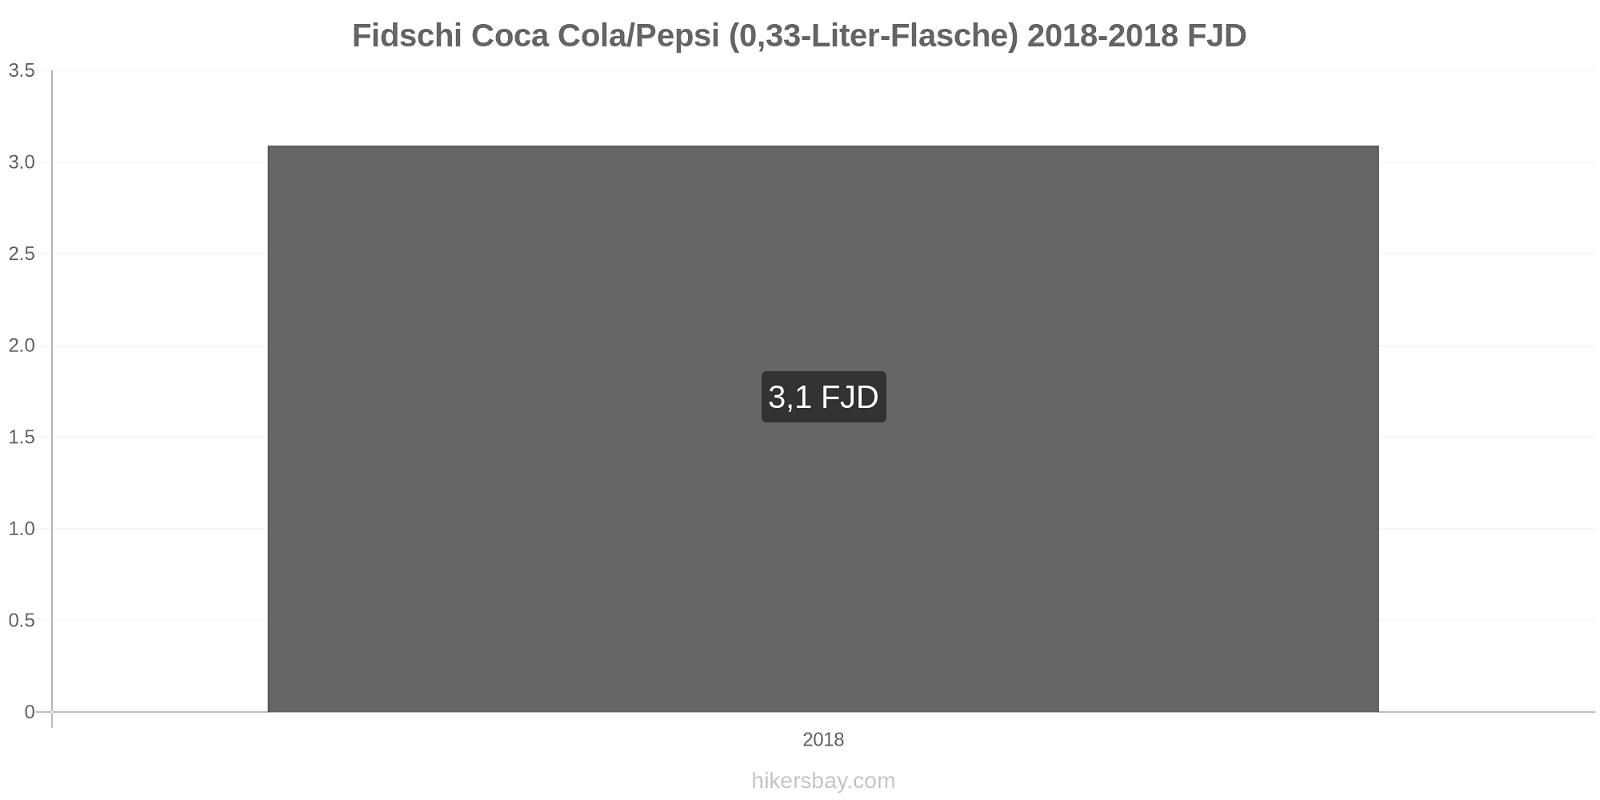 Fidschi Preisänderungen Coke/Pepsi (0,33-Liter-Flasche) hikersbay.com